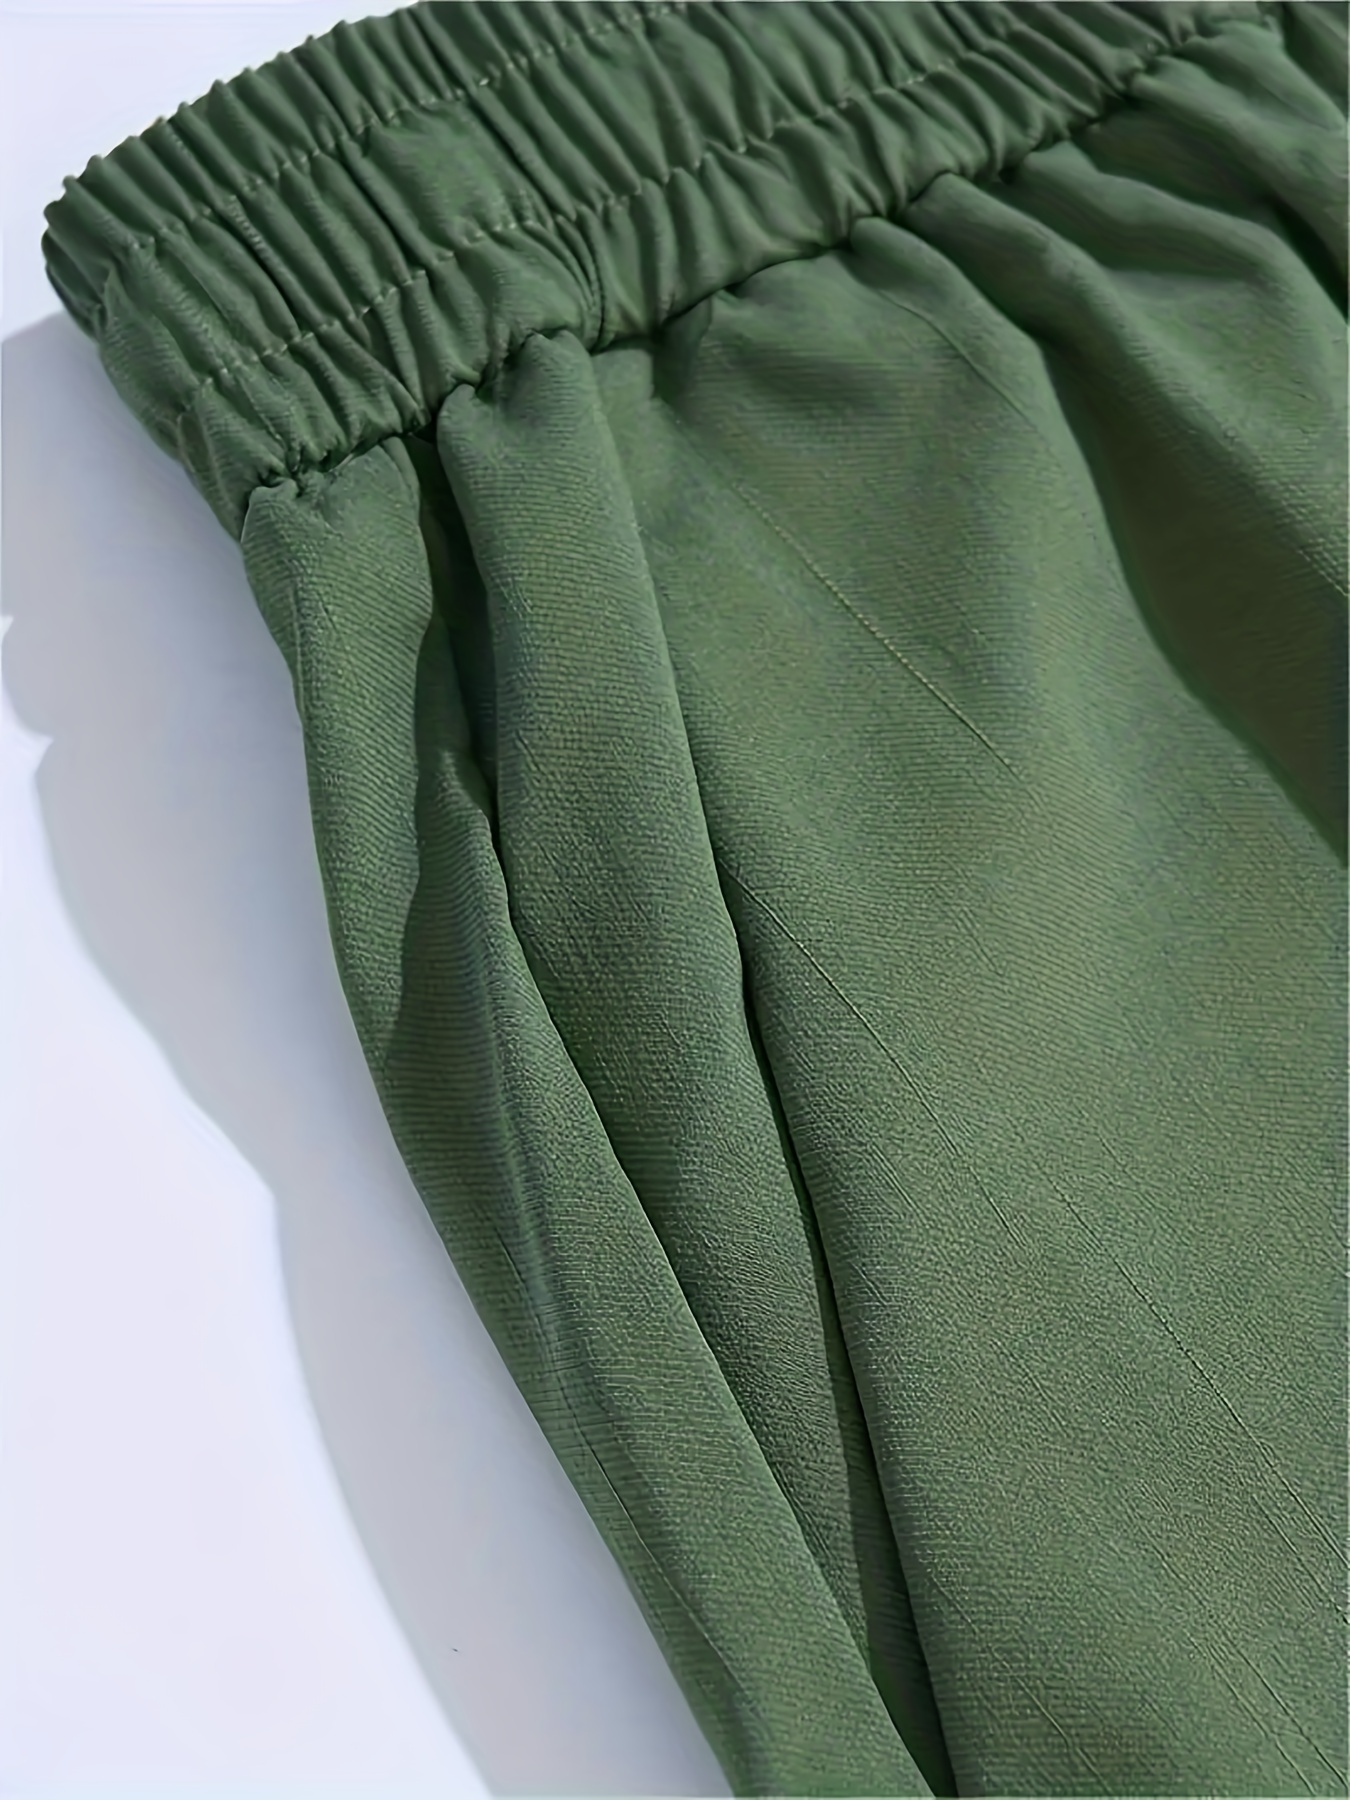 Pantaloni cargo in cotone tecnico ricamato - Abbigliamento 1ABYDI